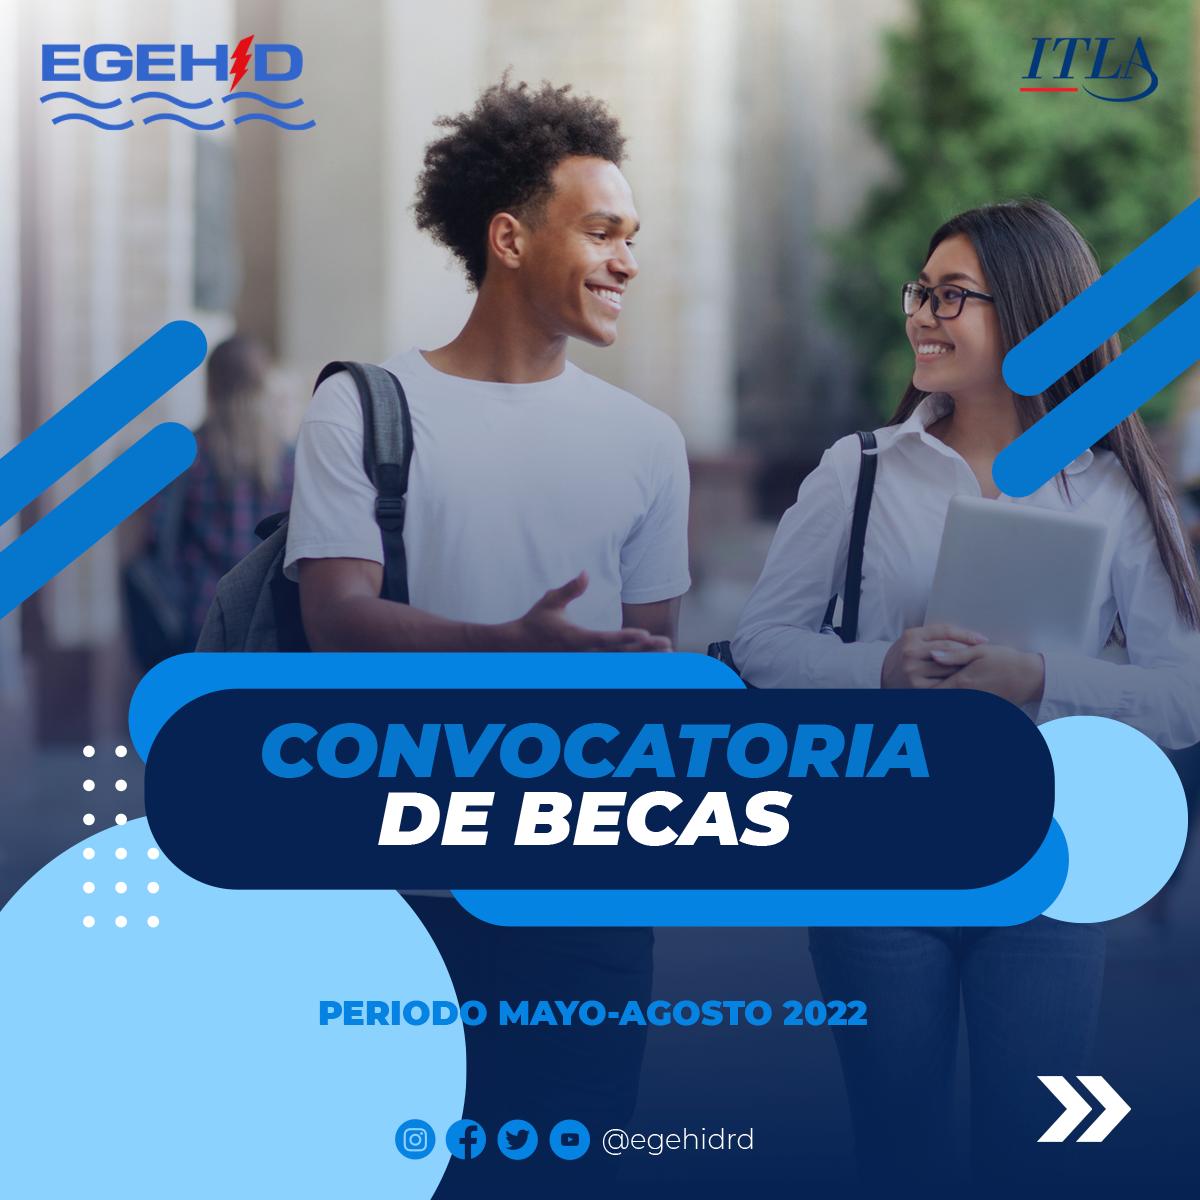 EGEHID anuncia convocatoria a becas para estudios en el ITLA